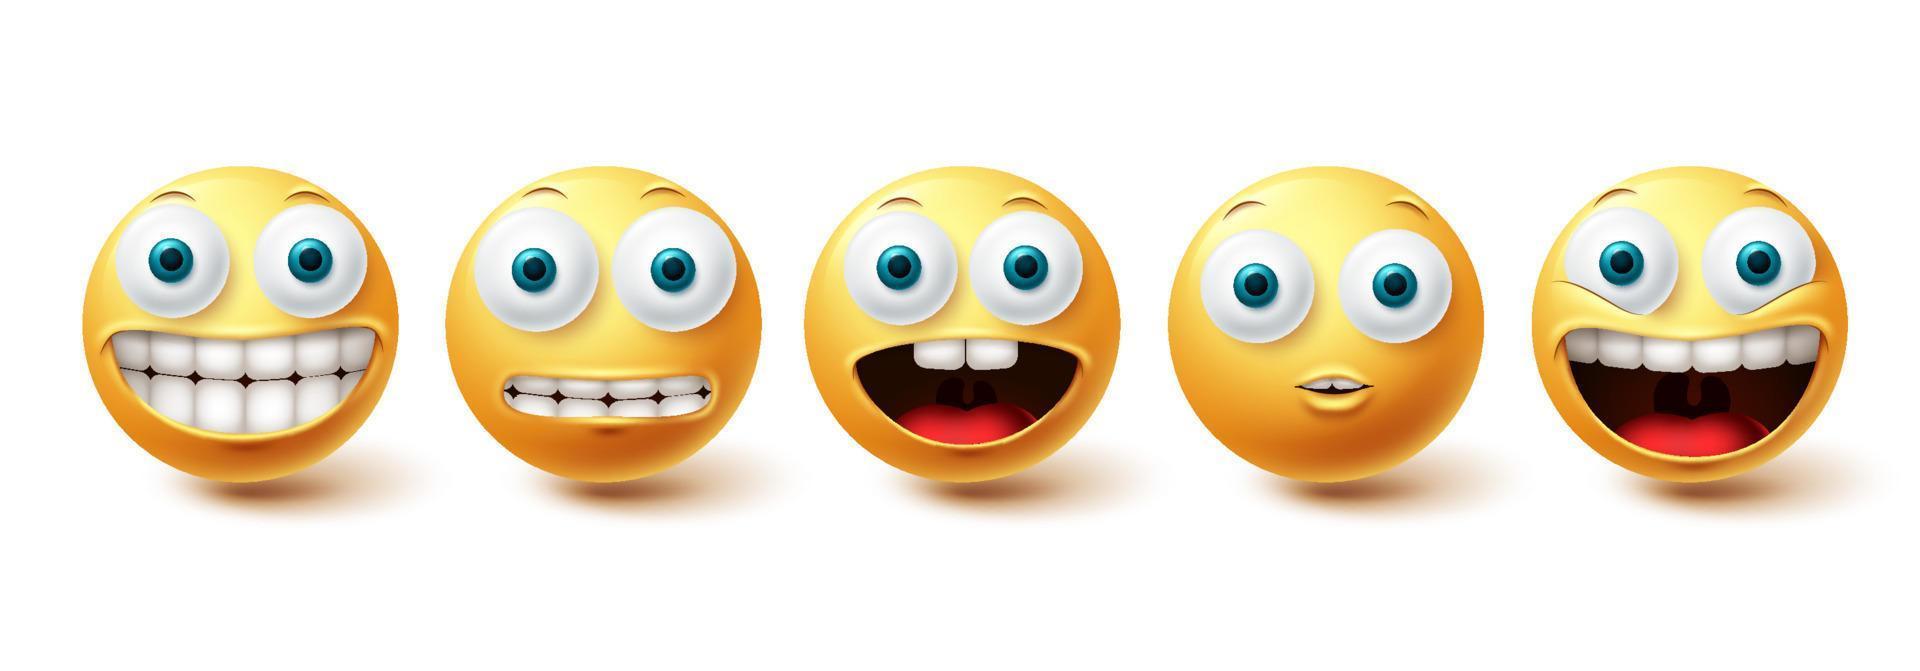 emoji grappige tanden vector set. emojis pictogrammen en emoticon met grappige en gelukkige glimlach gezichtsuitdrukkingen geïsoleerd op een witte achtergrond. vector illustratie